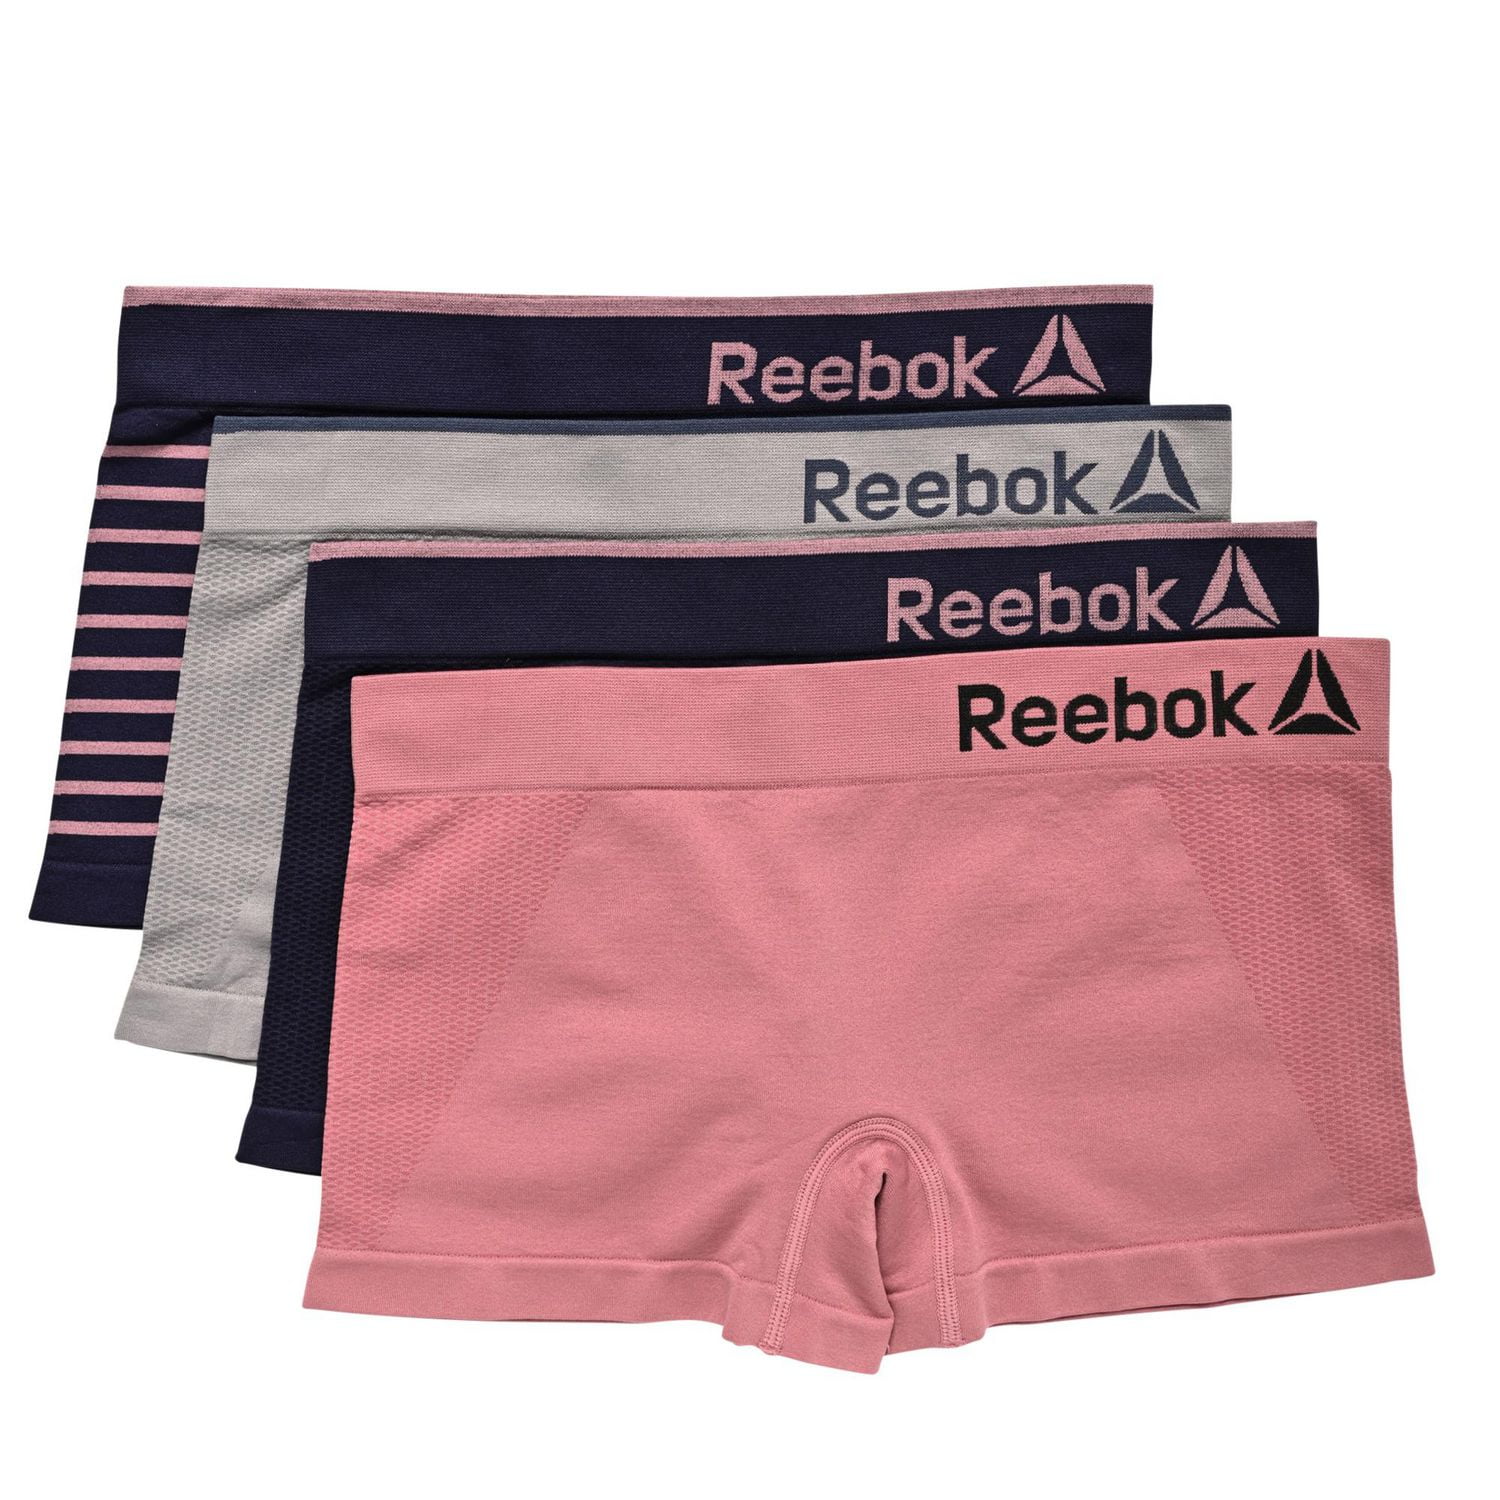 Reebok Women Underwear - Get Best Price from Manufacturers & Suppliers in  India